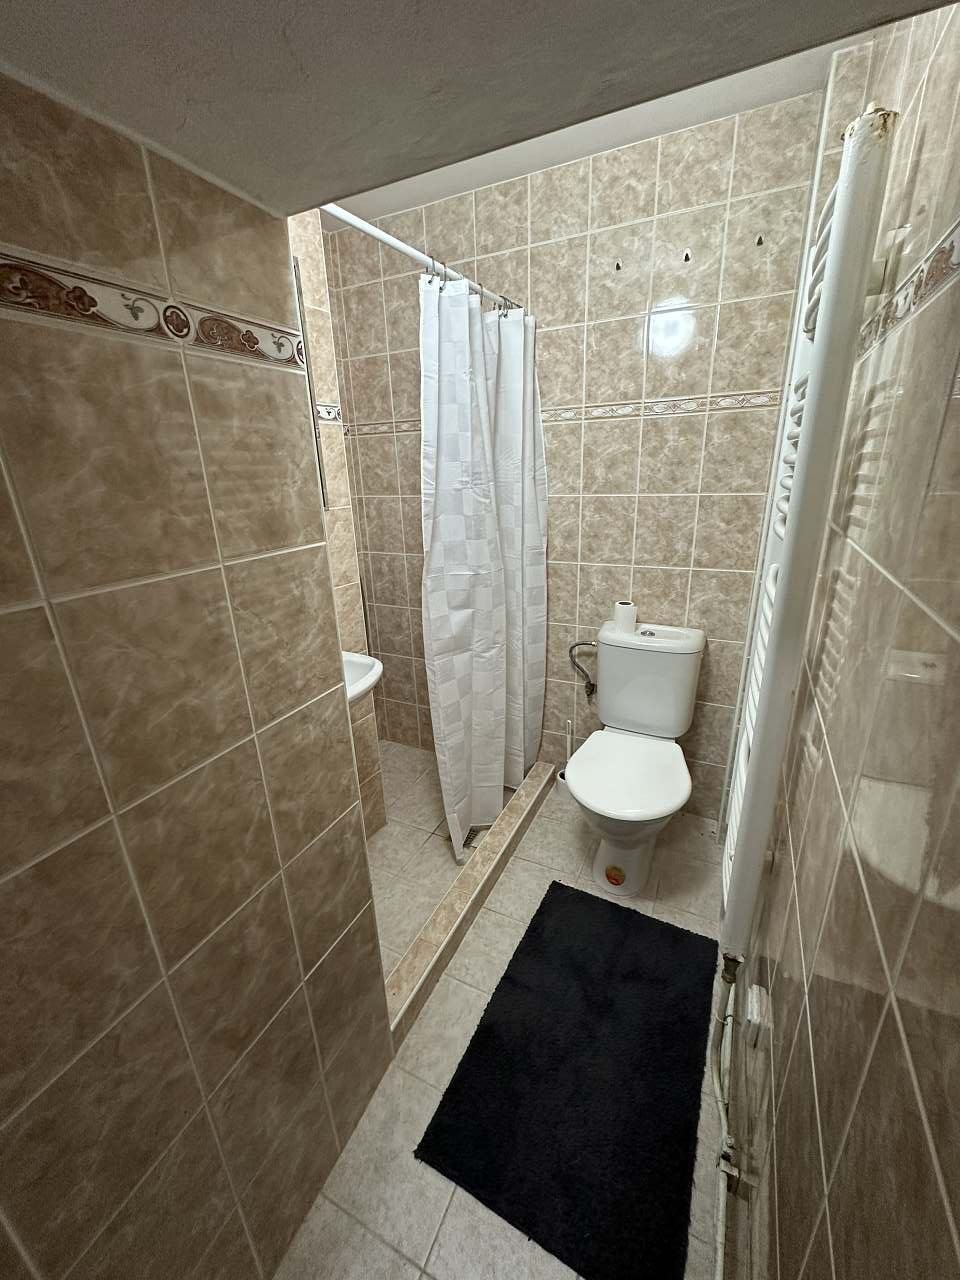 Koupelna č. 1 v přízemí: Jedna ze dvou koupelen, které vám zajistí pohodlí